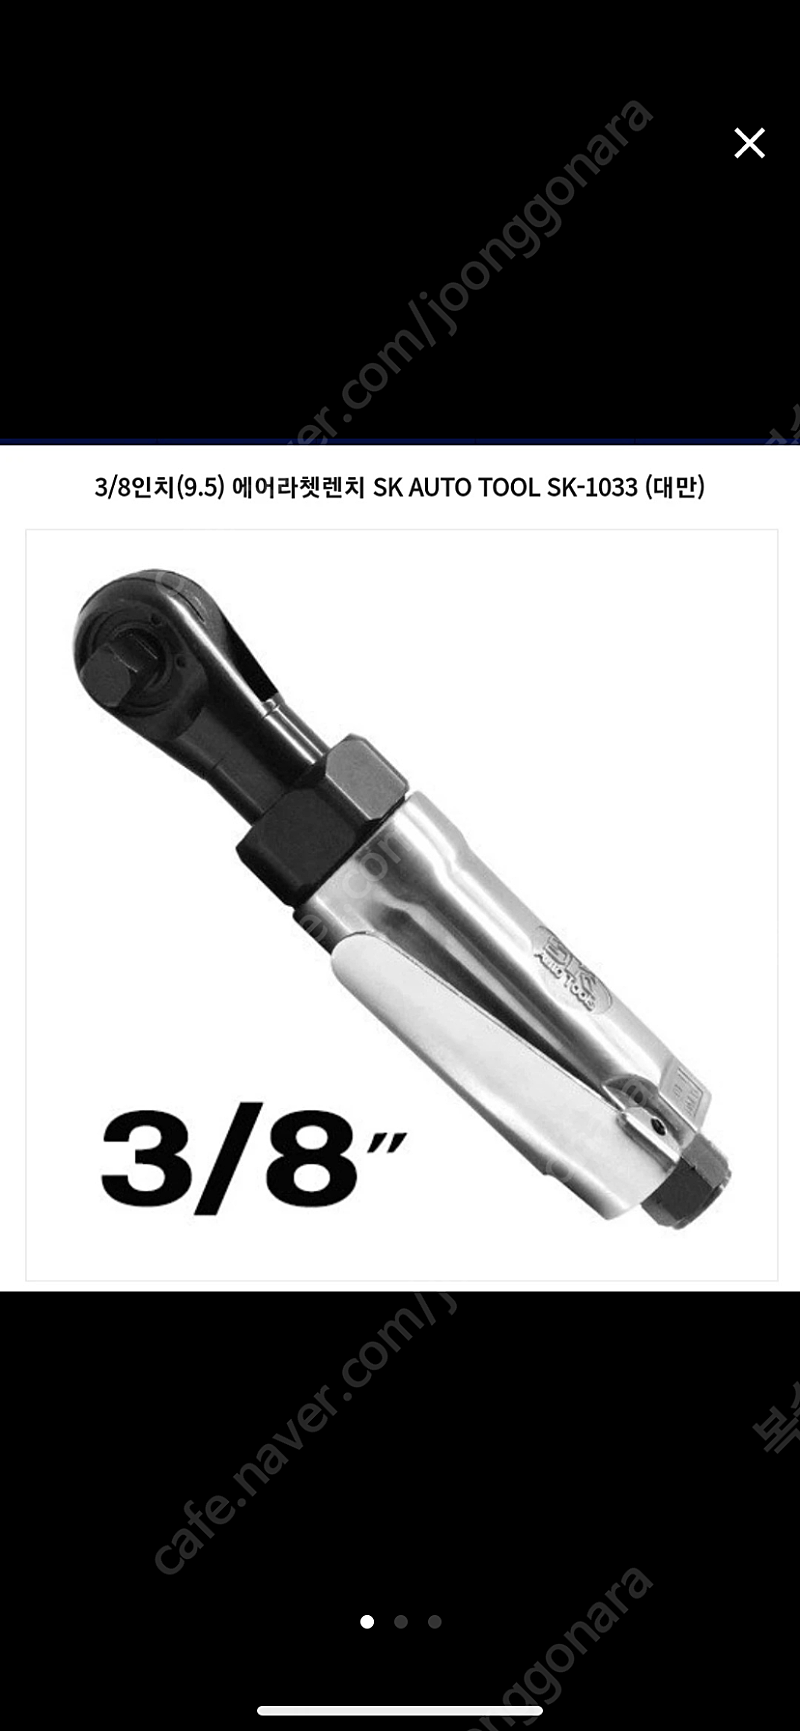 3/8인치(9.5) 에어라쳇렌치 SK AUTO TOOL SK-1033(대만) 판매합니다.